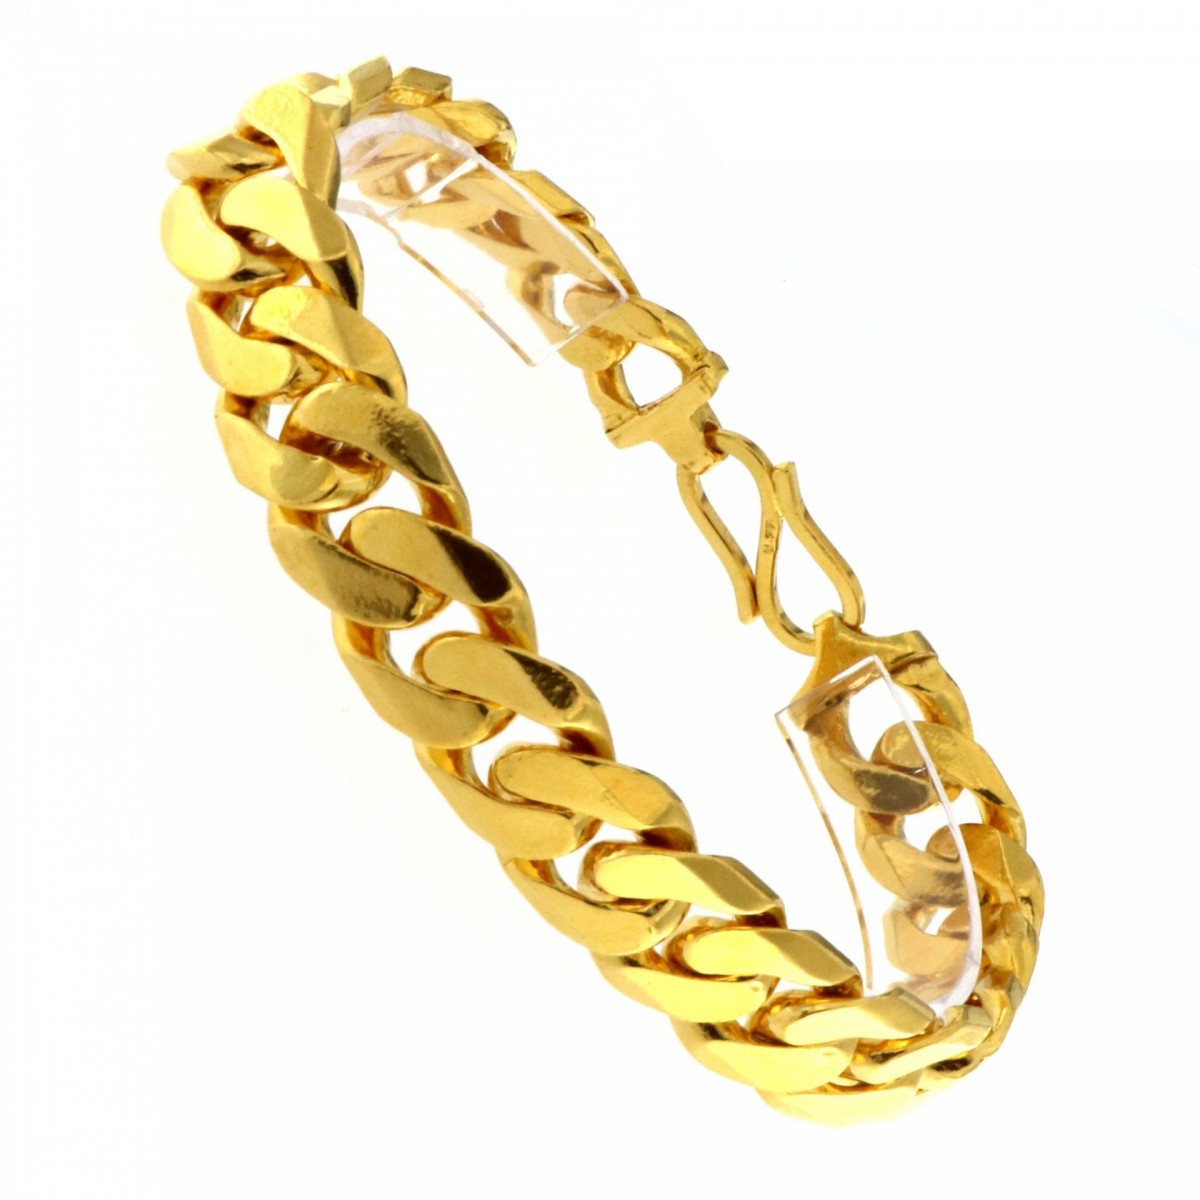 22ct Real Gold Asian/Indian/Pakistani Style Men's Bracelet | Bracelets ...